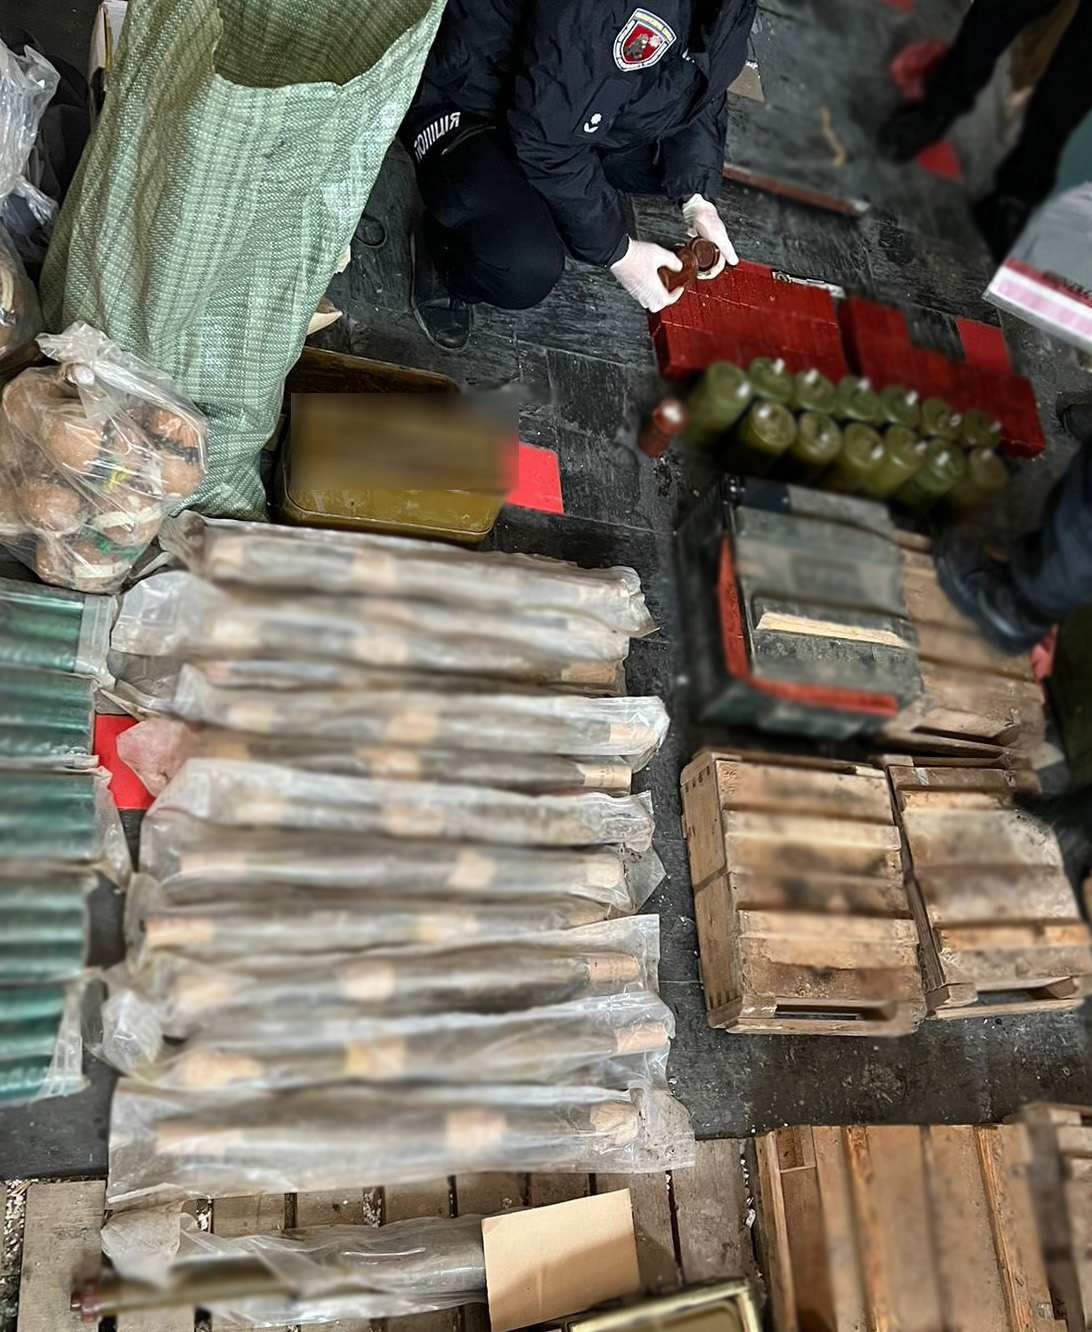 21 граната, 69 тротилових шашок і 10 тисяч набоїв &#8211; у жителя Кіровоградщини знайшли арсенал зброї. ФОТО